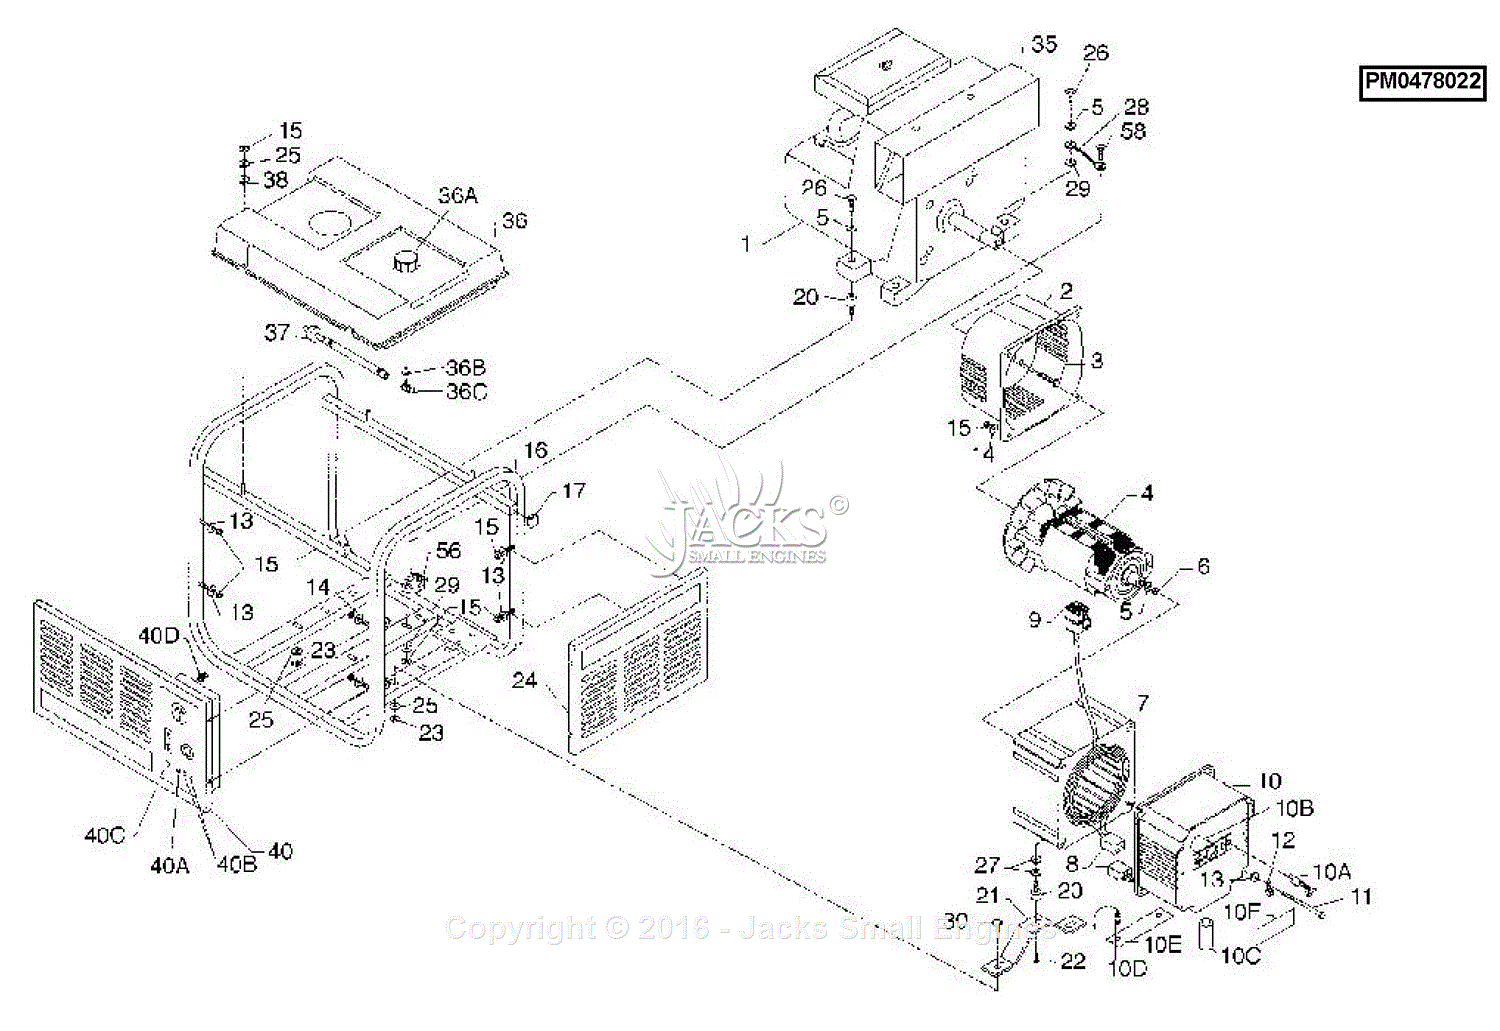 [DIAGRAM] Coleman Powermate 5000 Parts Diagram